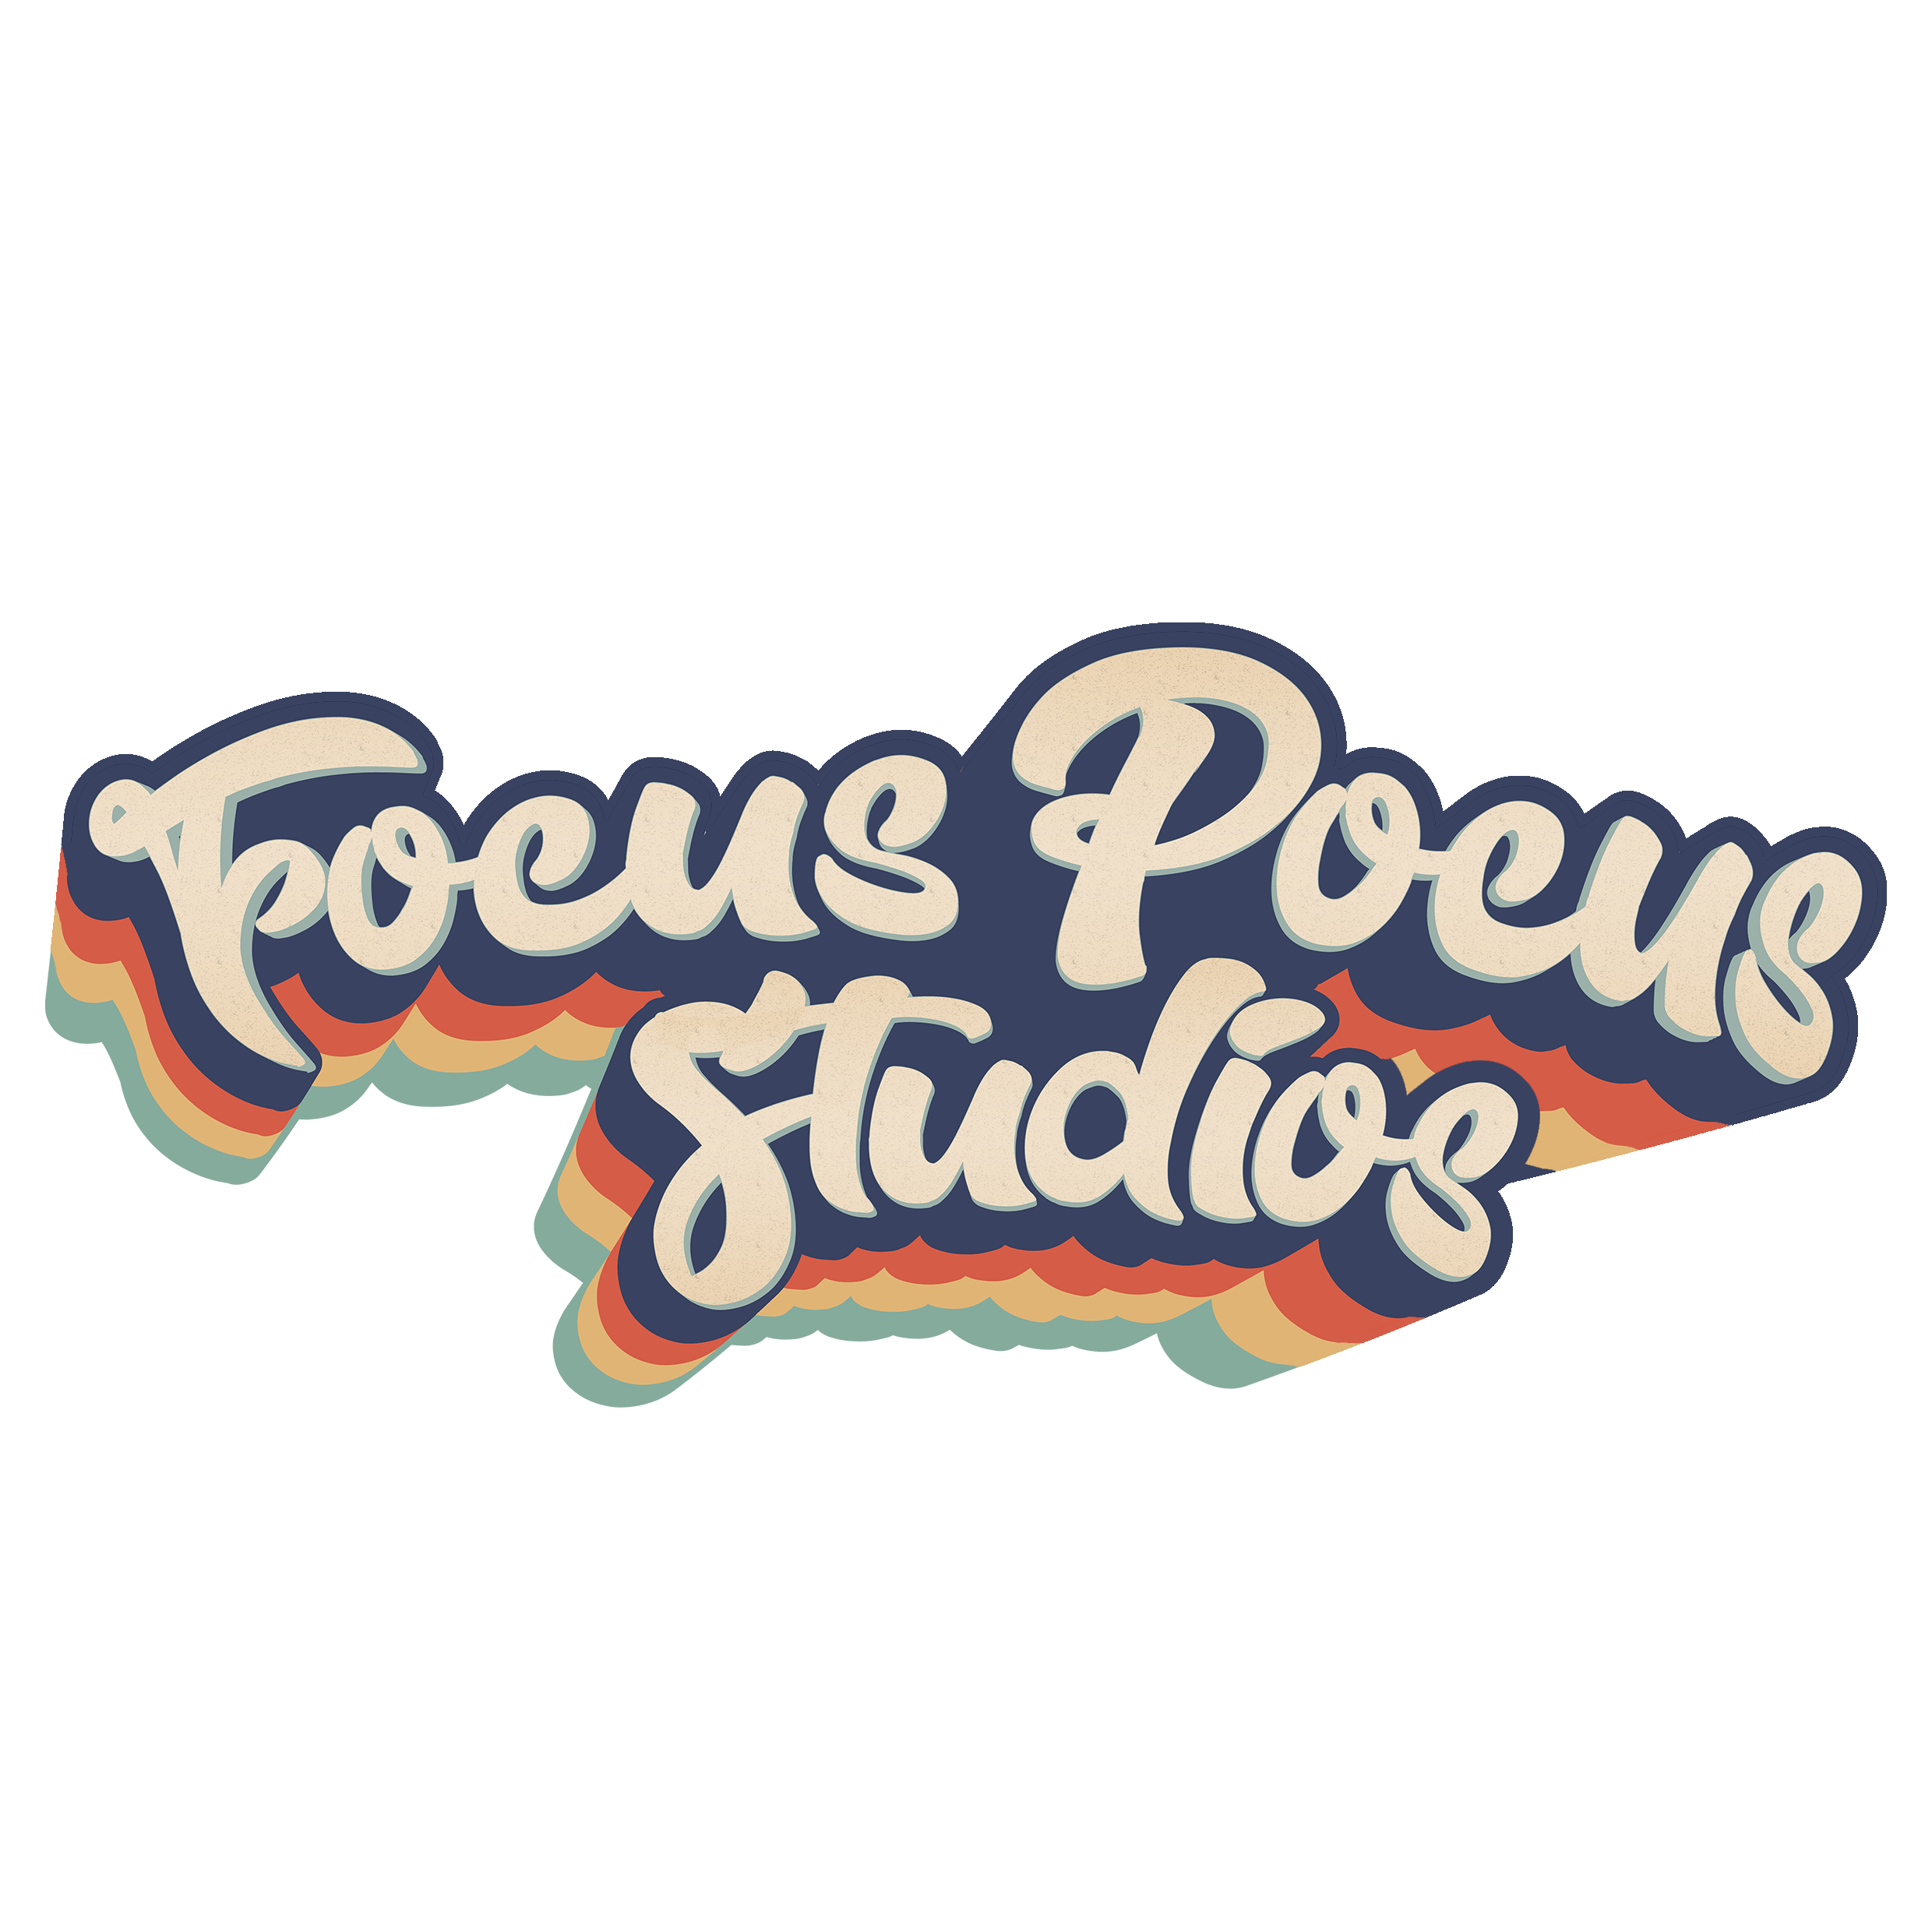 Focus Pocus Studios